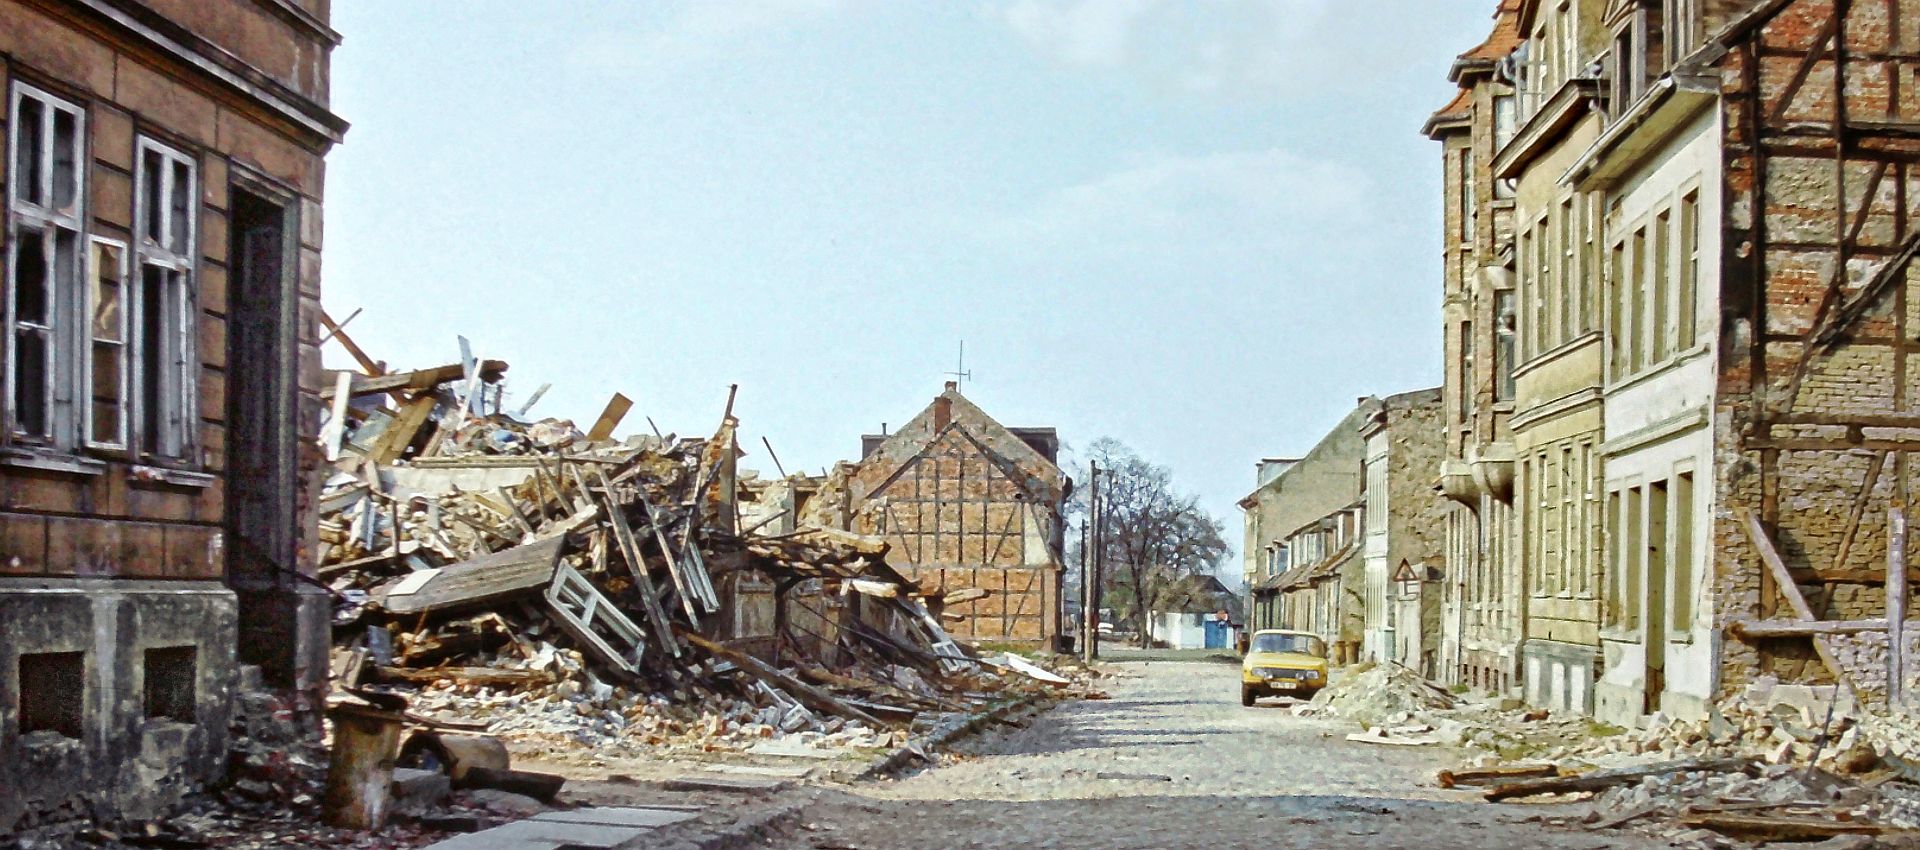 Sektion Nordeuropawissenschaften der Ernst-Moritz-Arndt Universität Greifswald. Das Foto zeigt die kaputte Greifswalder Altstadt in den 1980er-Jahren.